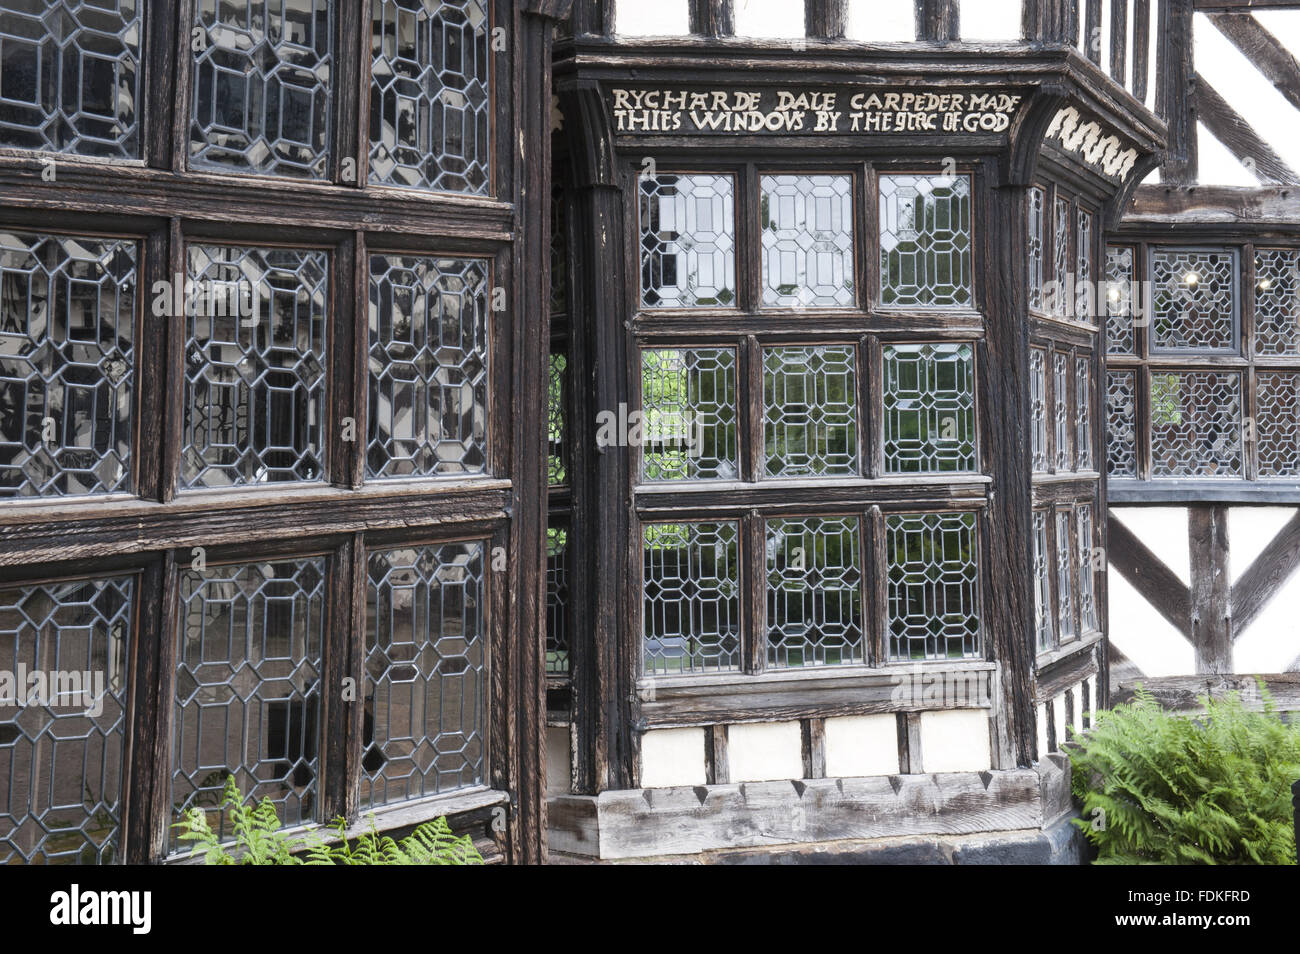 Les fenêtres en baie dans le coin nord-est de la cour intérieure à Little Moreton Hall, Cheshire. Il y a une inscription de Richard Dale, qui a construit le windows en 1559, au-dessus d'une des fenêtres. Banque D'Images